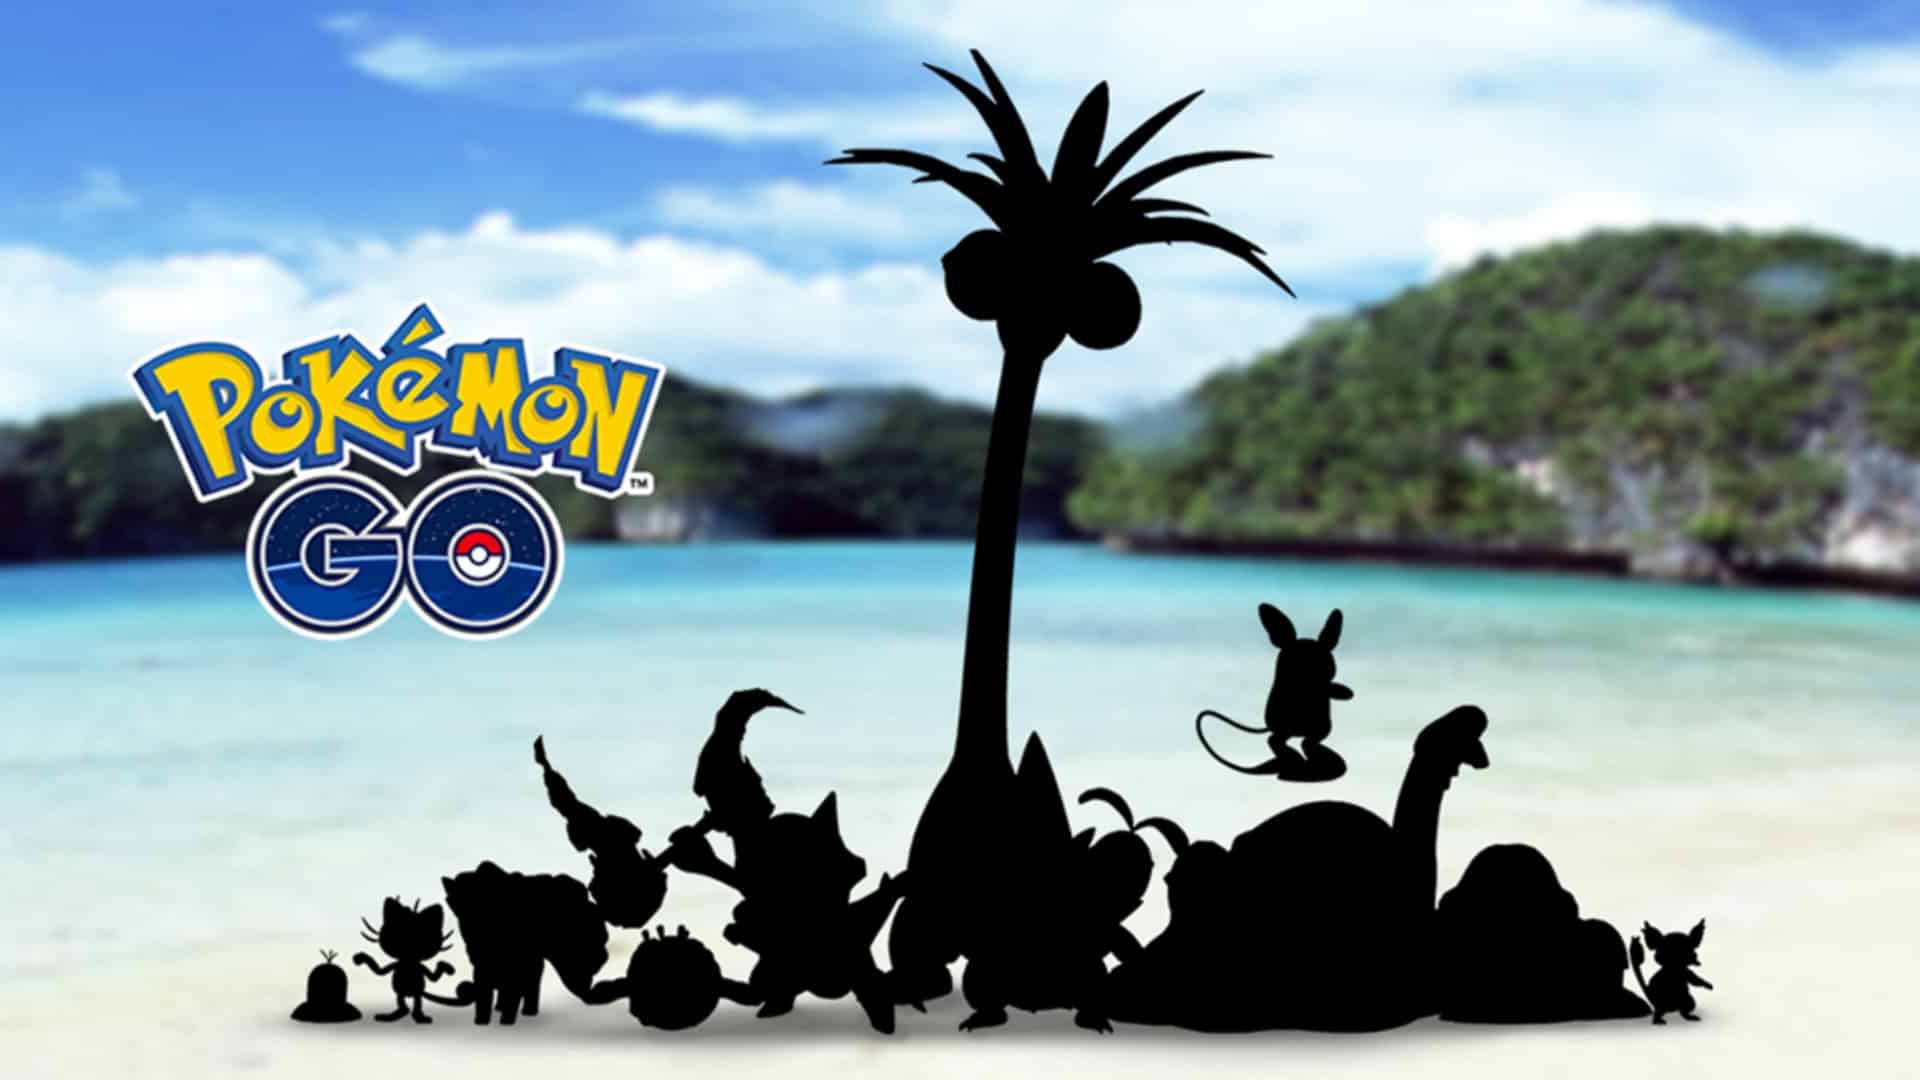 Pokémon Go Heure vedette racaillou d'alola